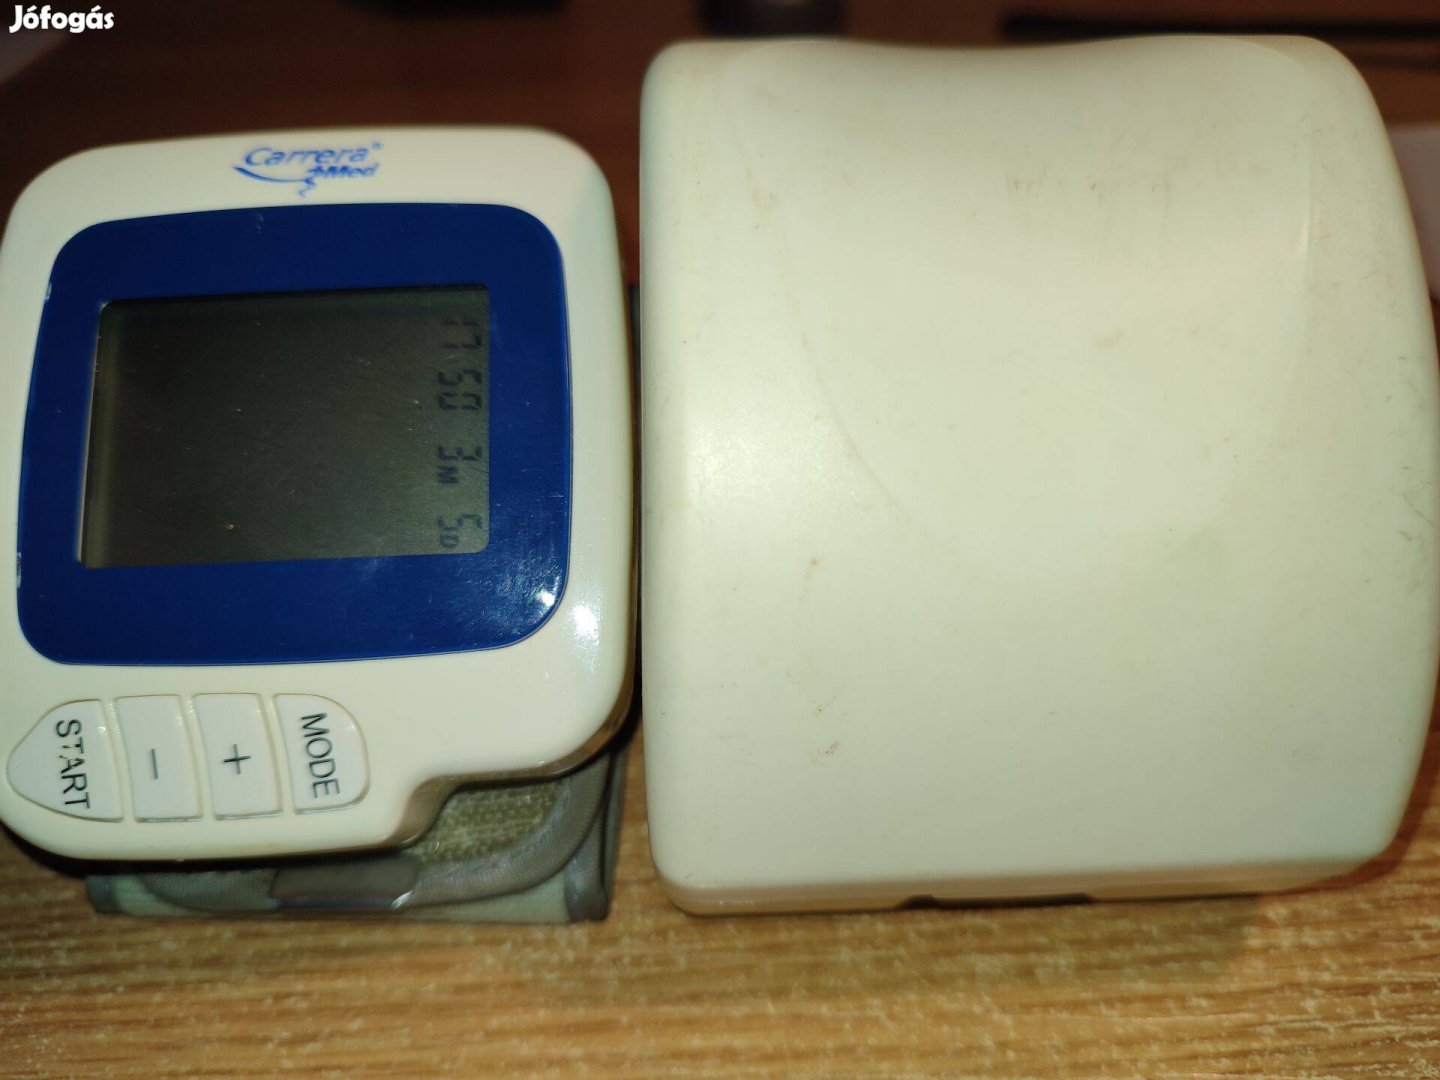 Csuklós vérnyomásmérő